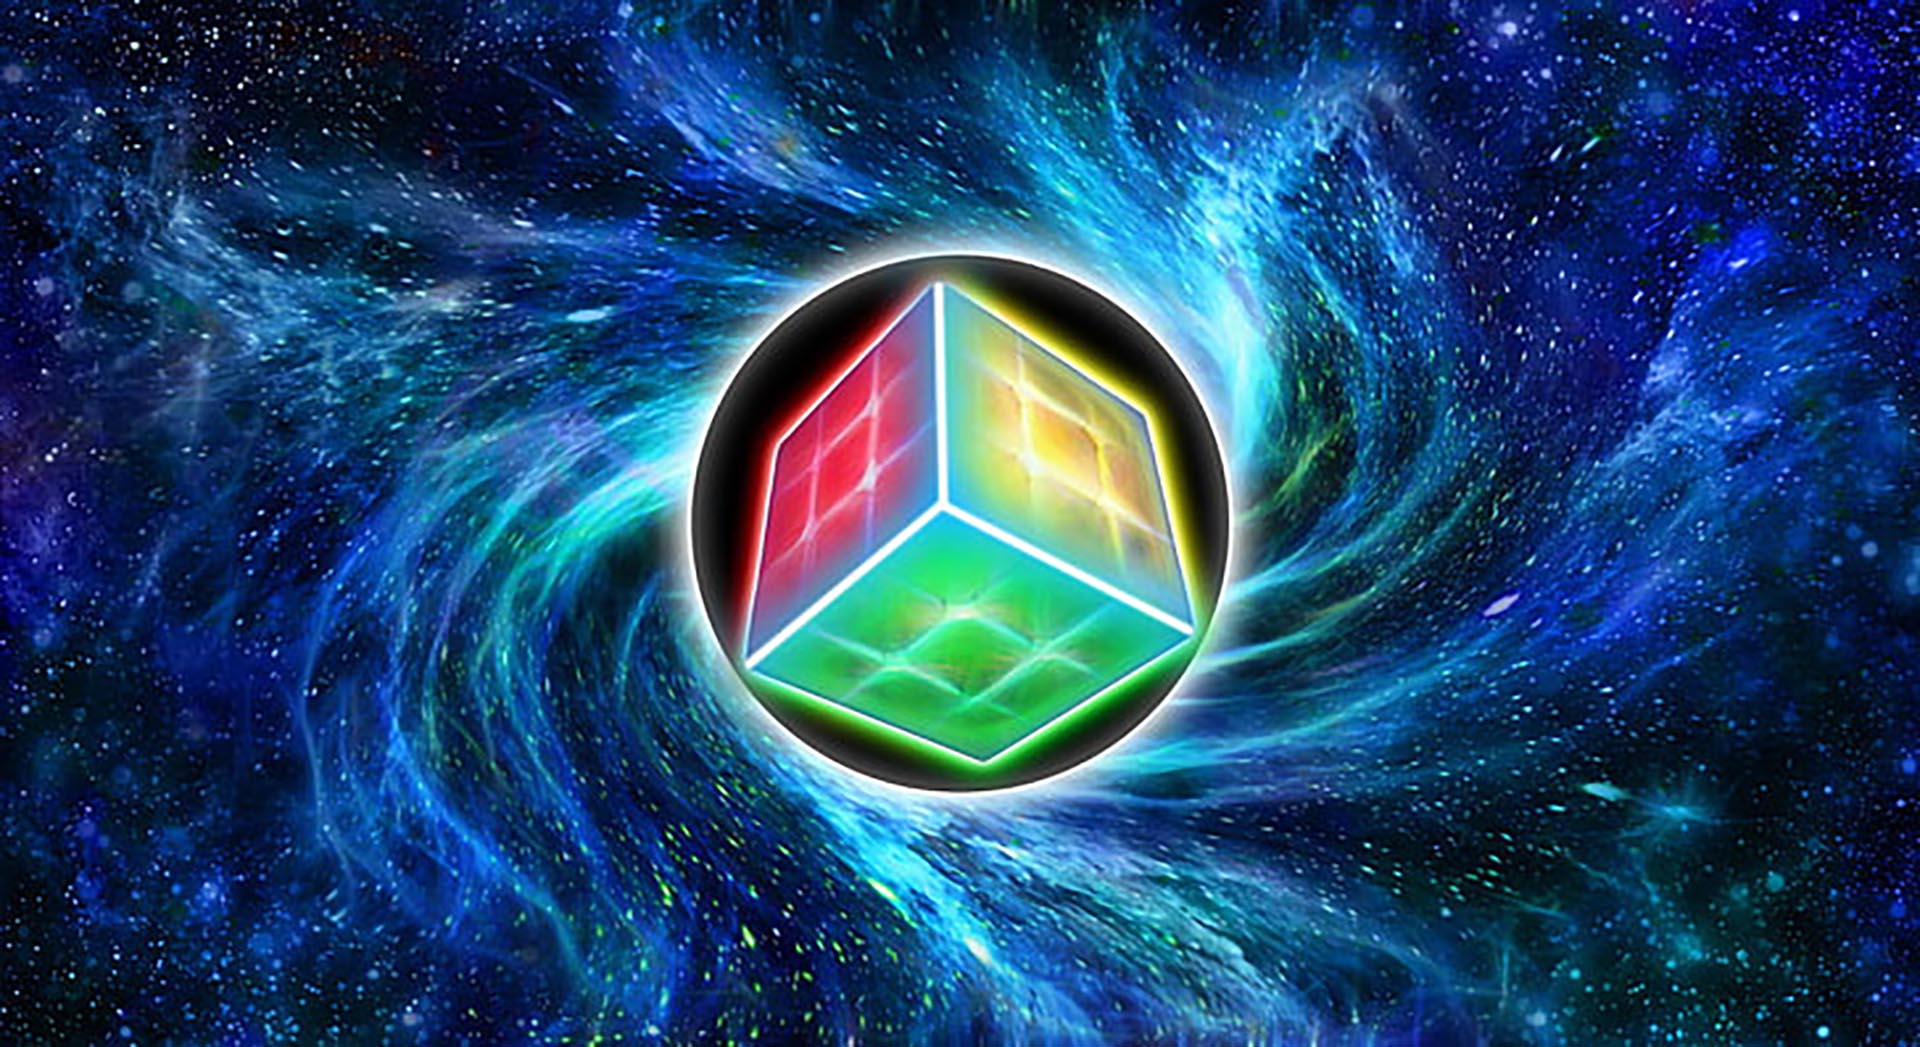 Hình nền Rubik ngầu sẽ khiến cho bạn trở nên độc đáo và thu hút ngay từ lần đầu tiên. Với sự kết hợp tinh tế giữa màu sắc và hình dáng, hình nền Rubik ngầu không chỉ là một tác phẩm nghệ thuật mà còn là biểu tượng cho sức mạnh và sự chăm chỉ. Hãy cùng khám phá và trở nên ngầu hơn ngay nào!